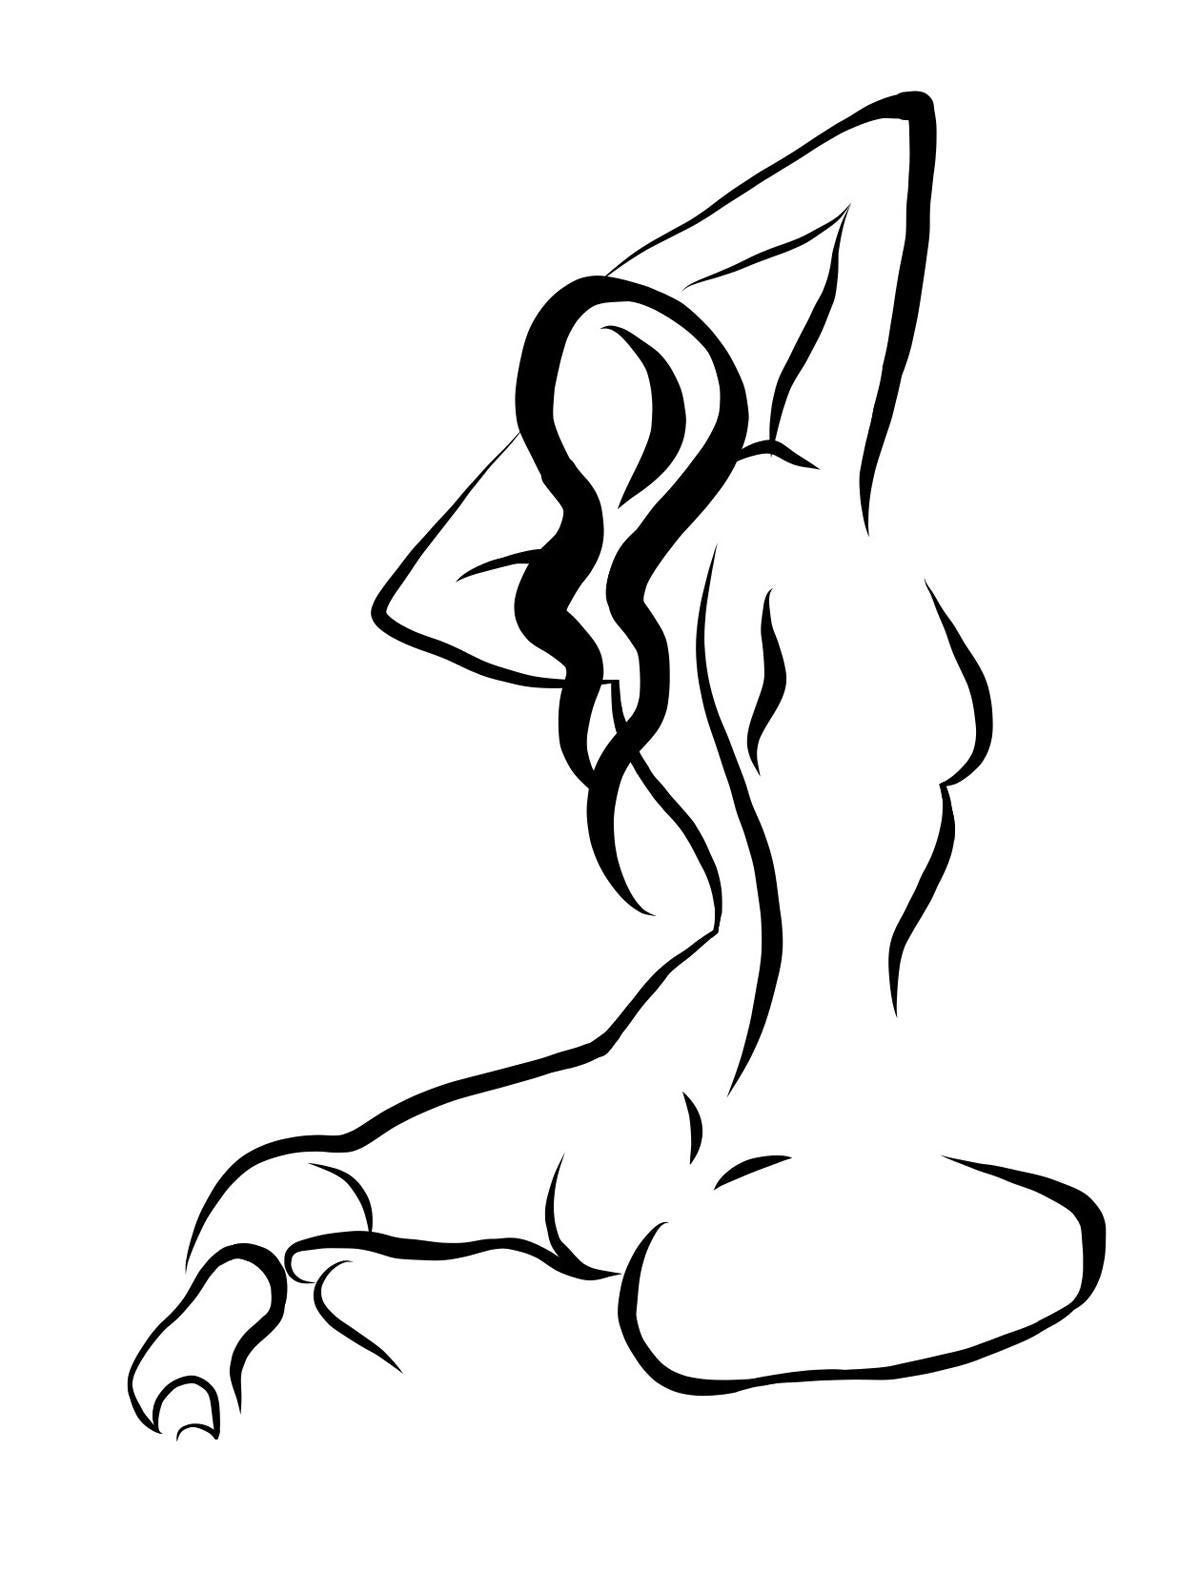 Haiku #17 - Dessin vectoriel numérique d'un nu féminin assis de dos